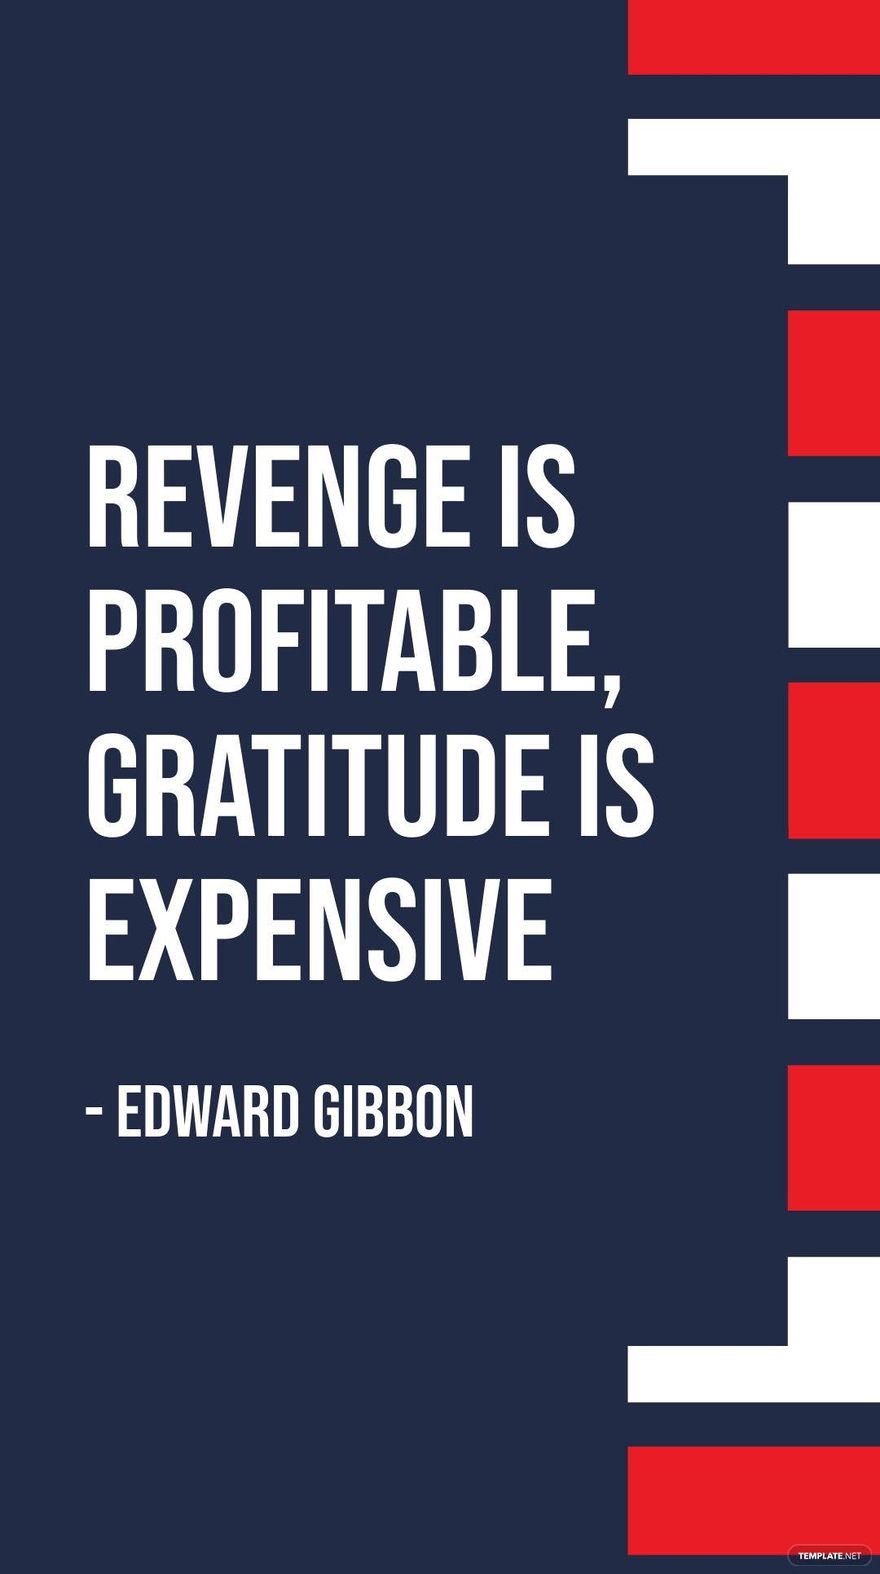 Free Edward Gibbon - Revenge is profitable, gratitude is expensive in JPG